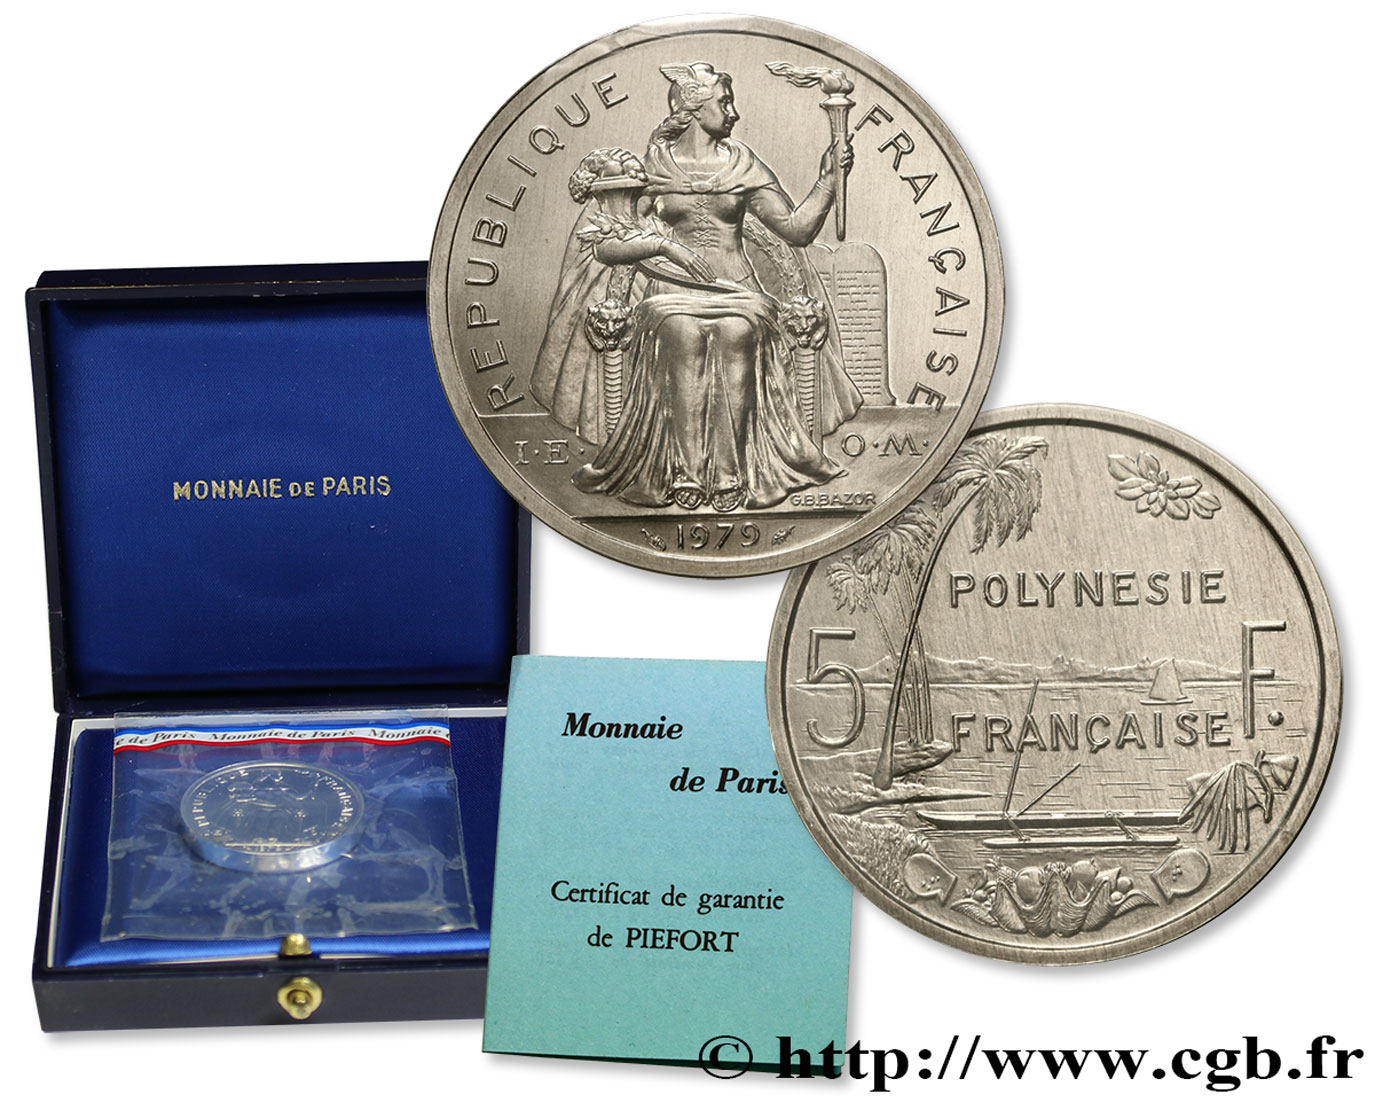 POLYNÉSIE FRANÇAISE Piéfort de 5 Francs I.E.O.M. 1979 Paris FDC 